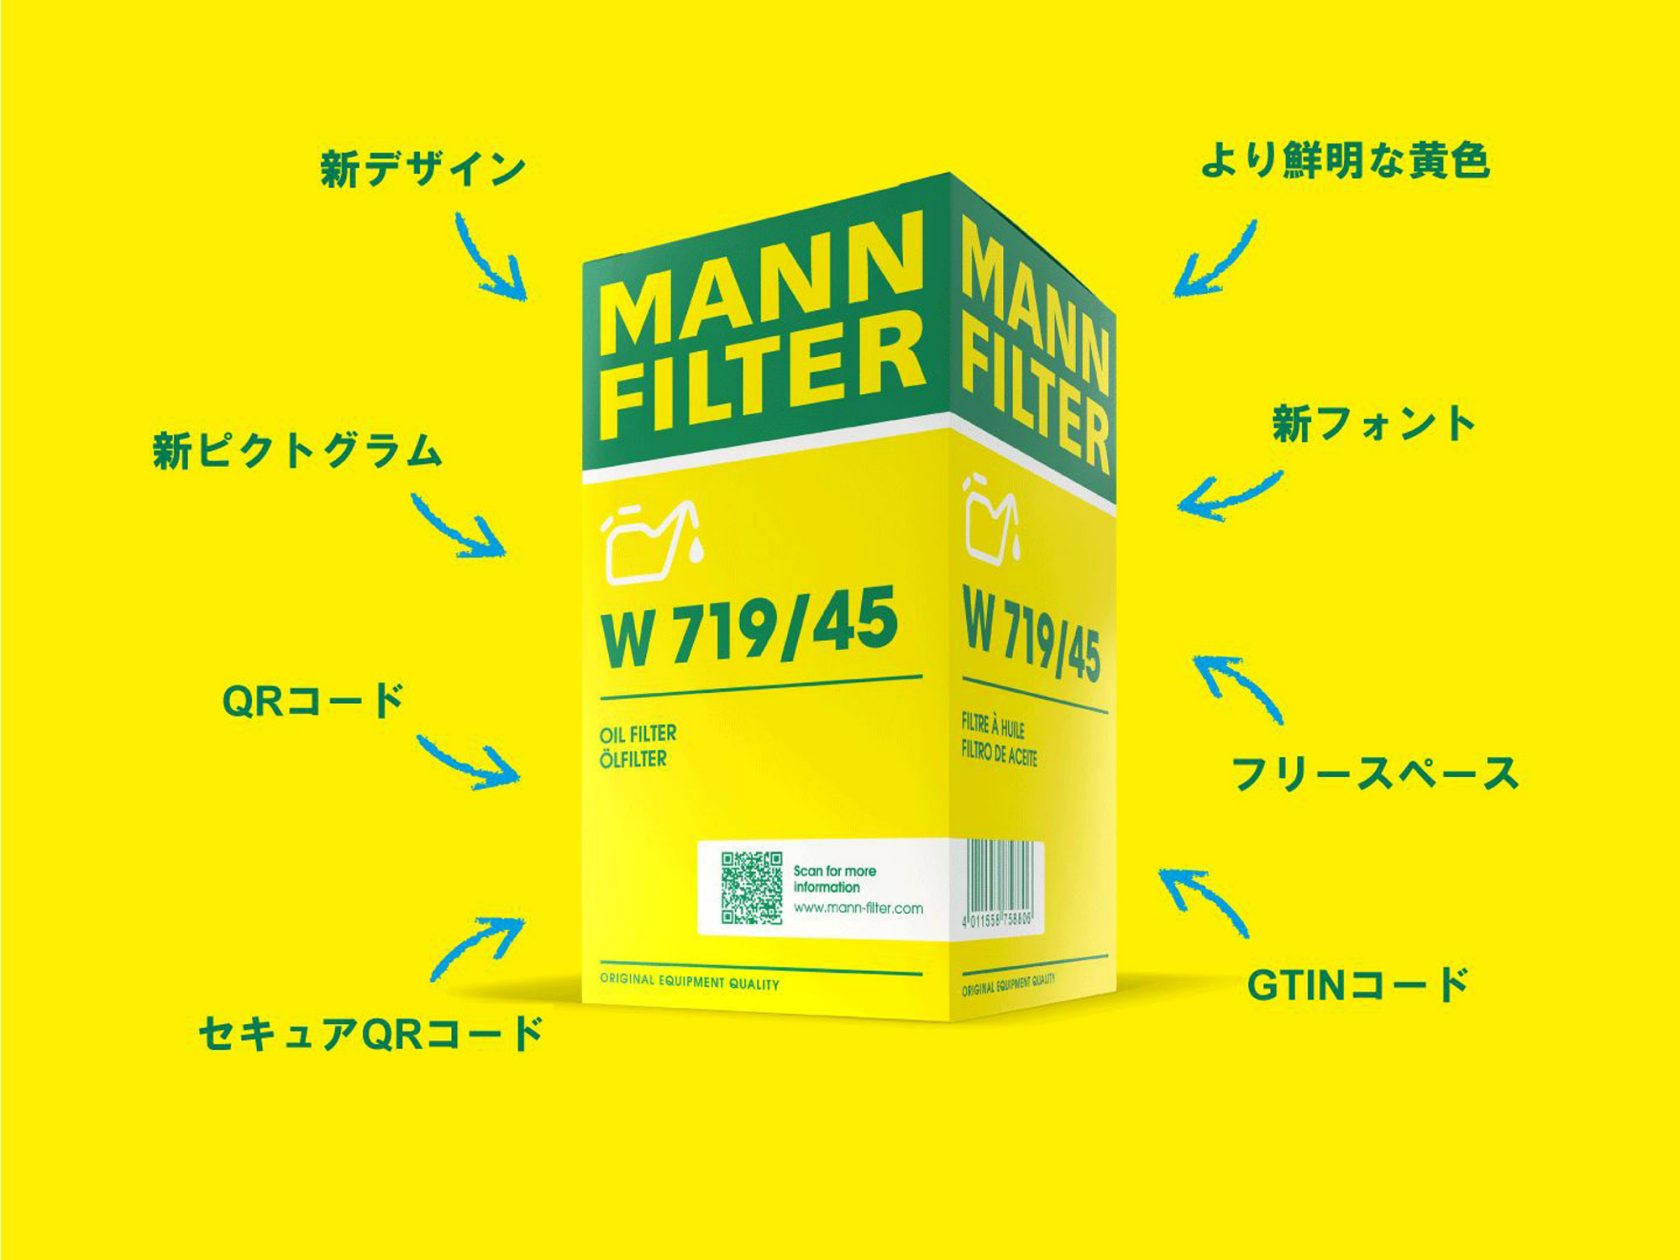 MANN-FILTERの新しいパッケージの特徴を簡単にご紹介します